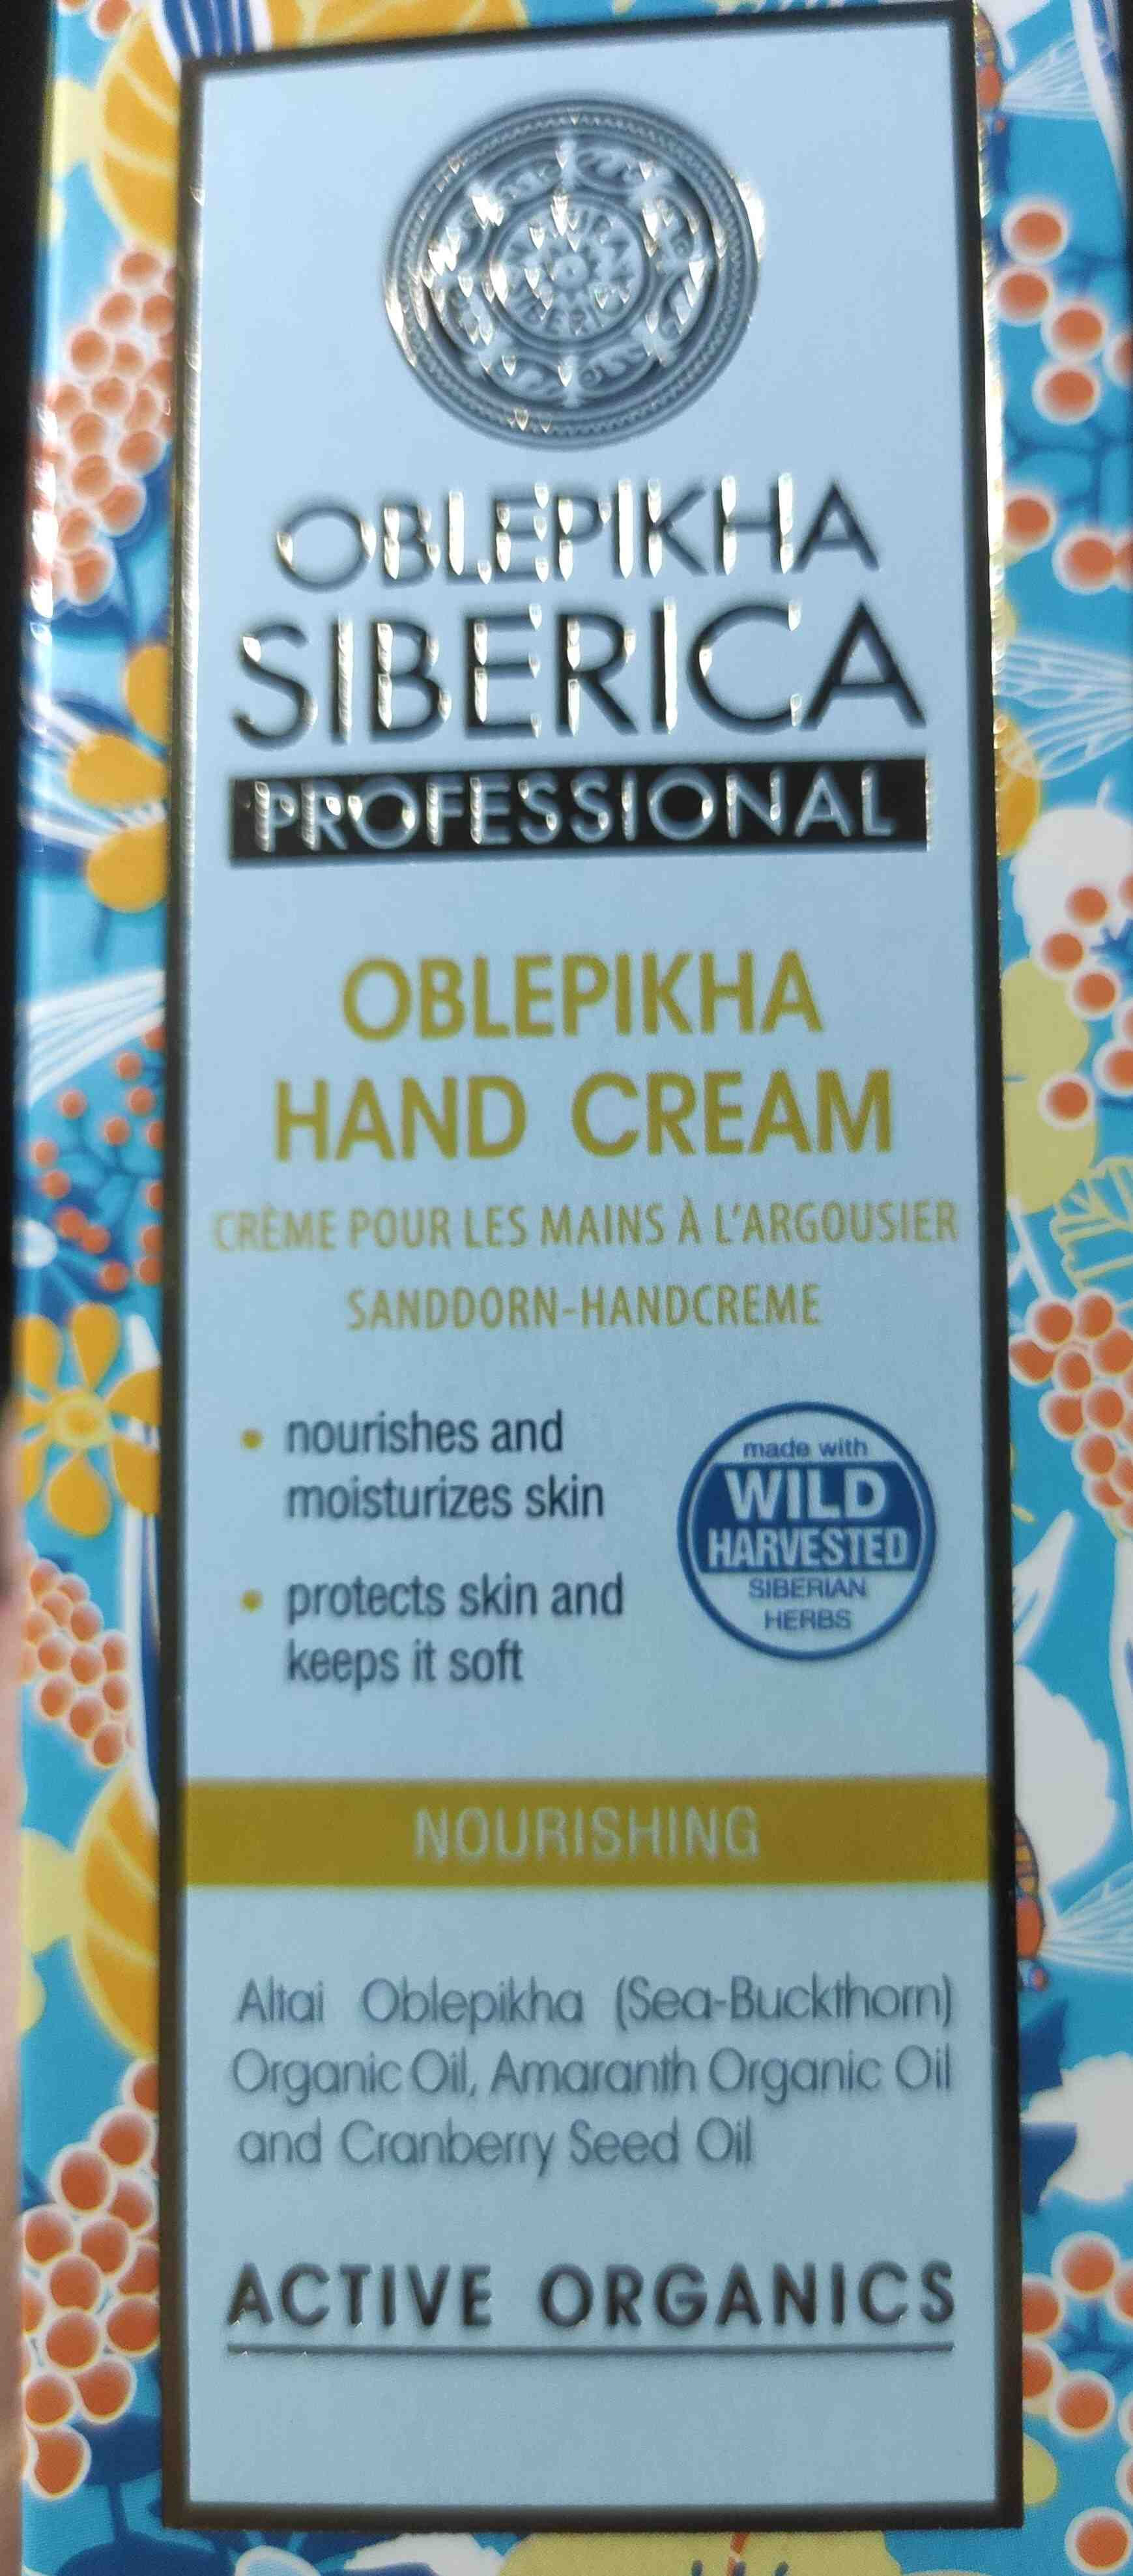 Oblekpikha Hand Cream - Produit - en